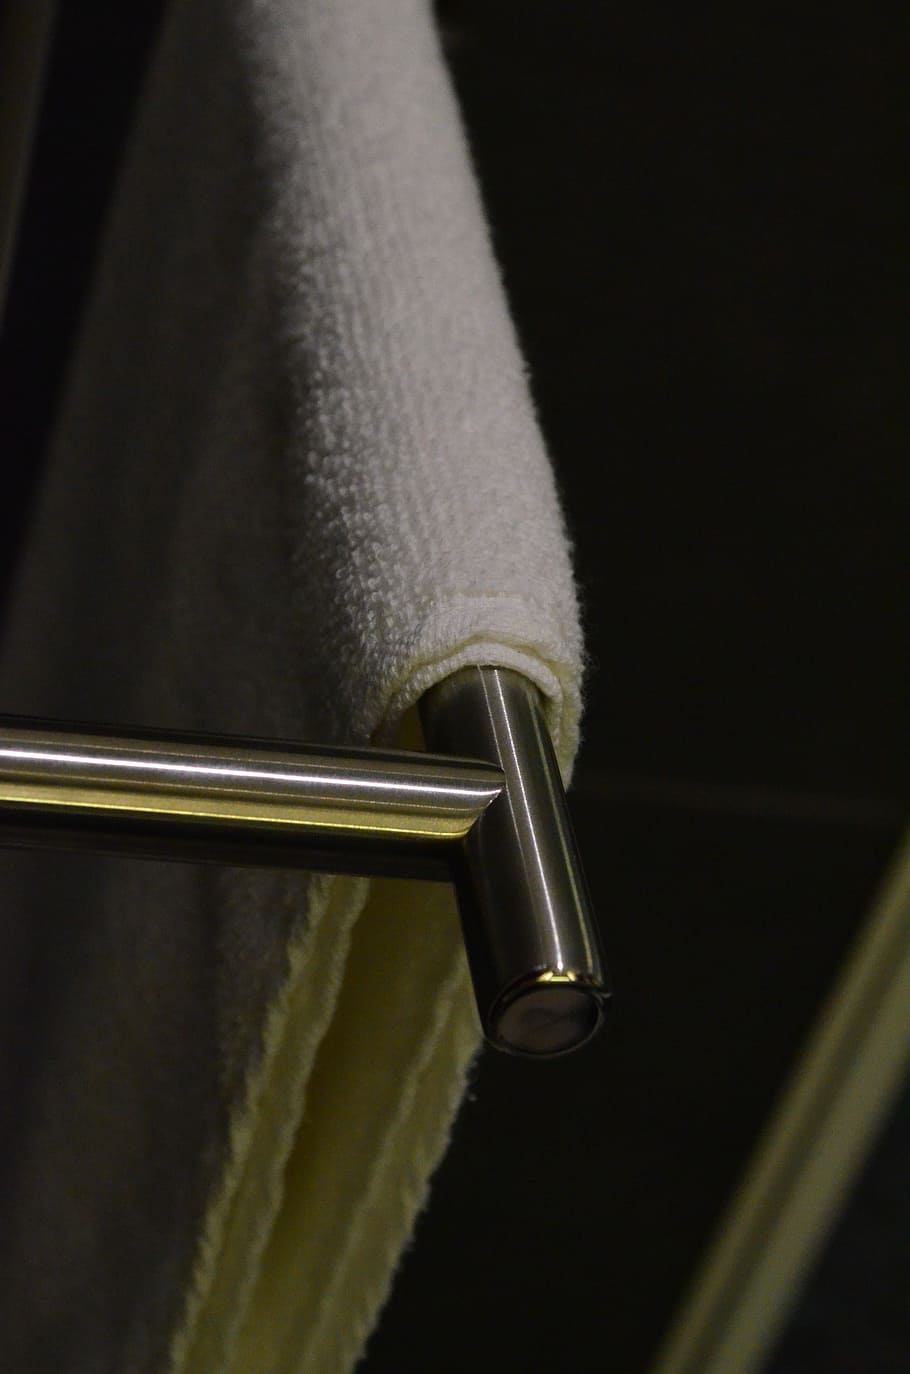 Towel Bar, Bathroom Fixtures, bathroom accessories, close-up, HD wallpaper